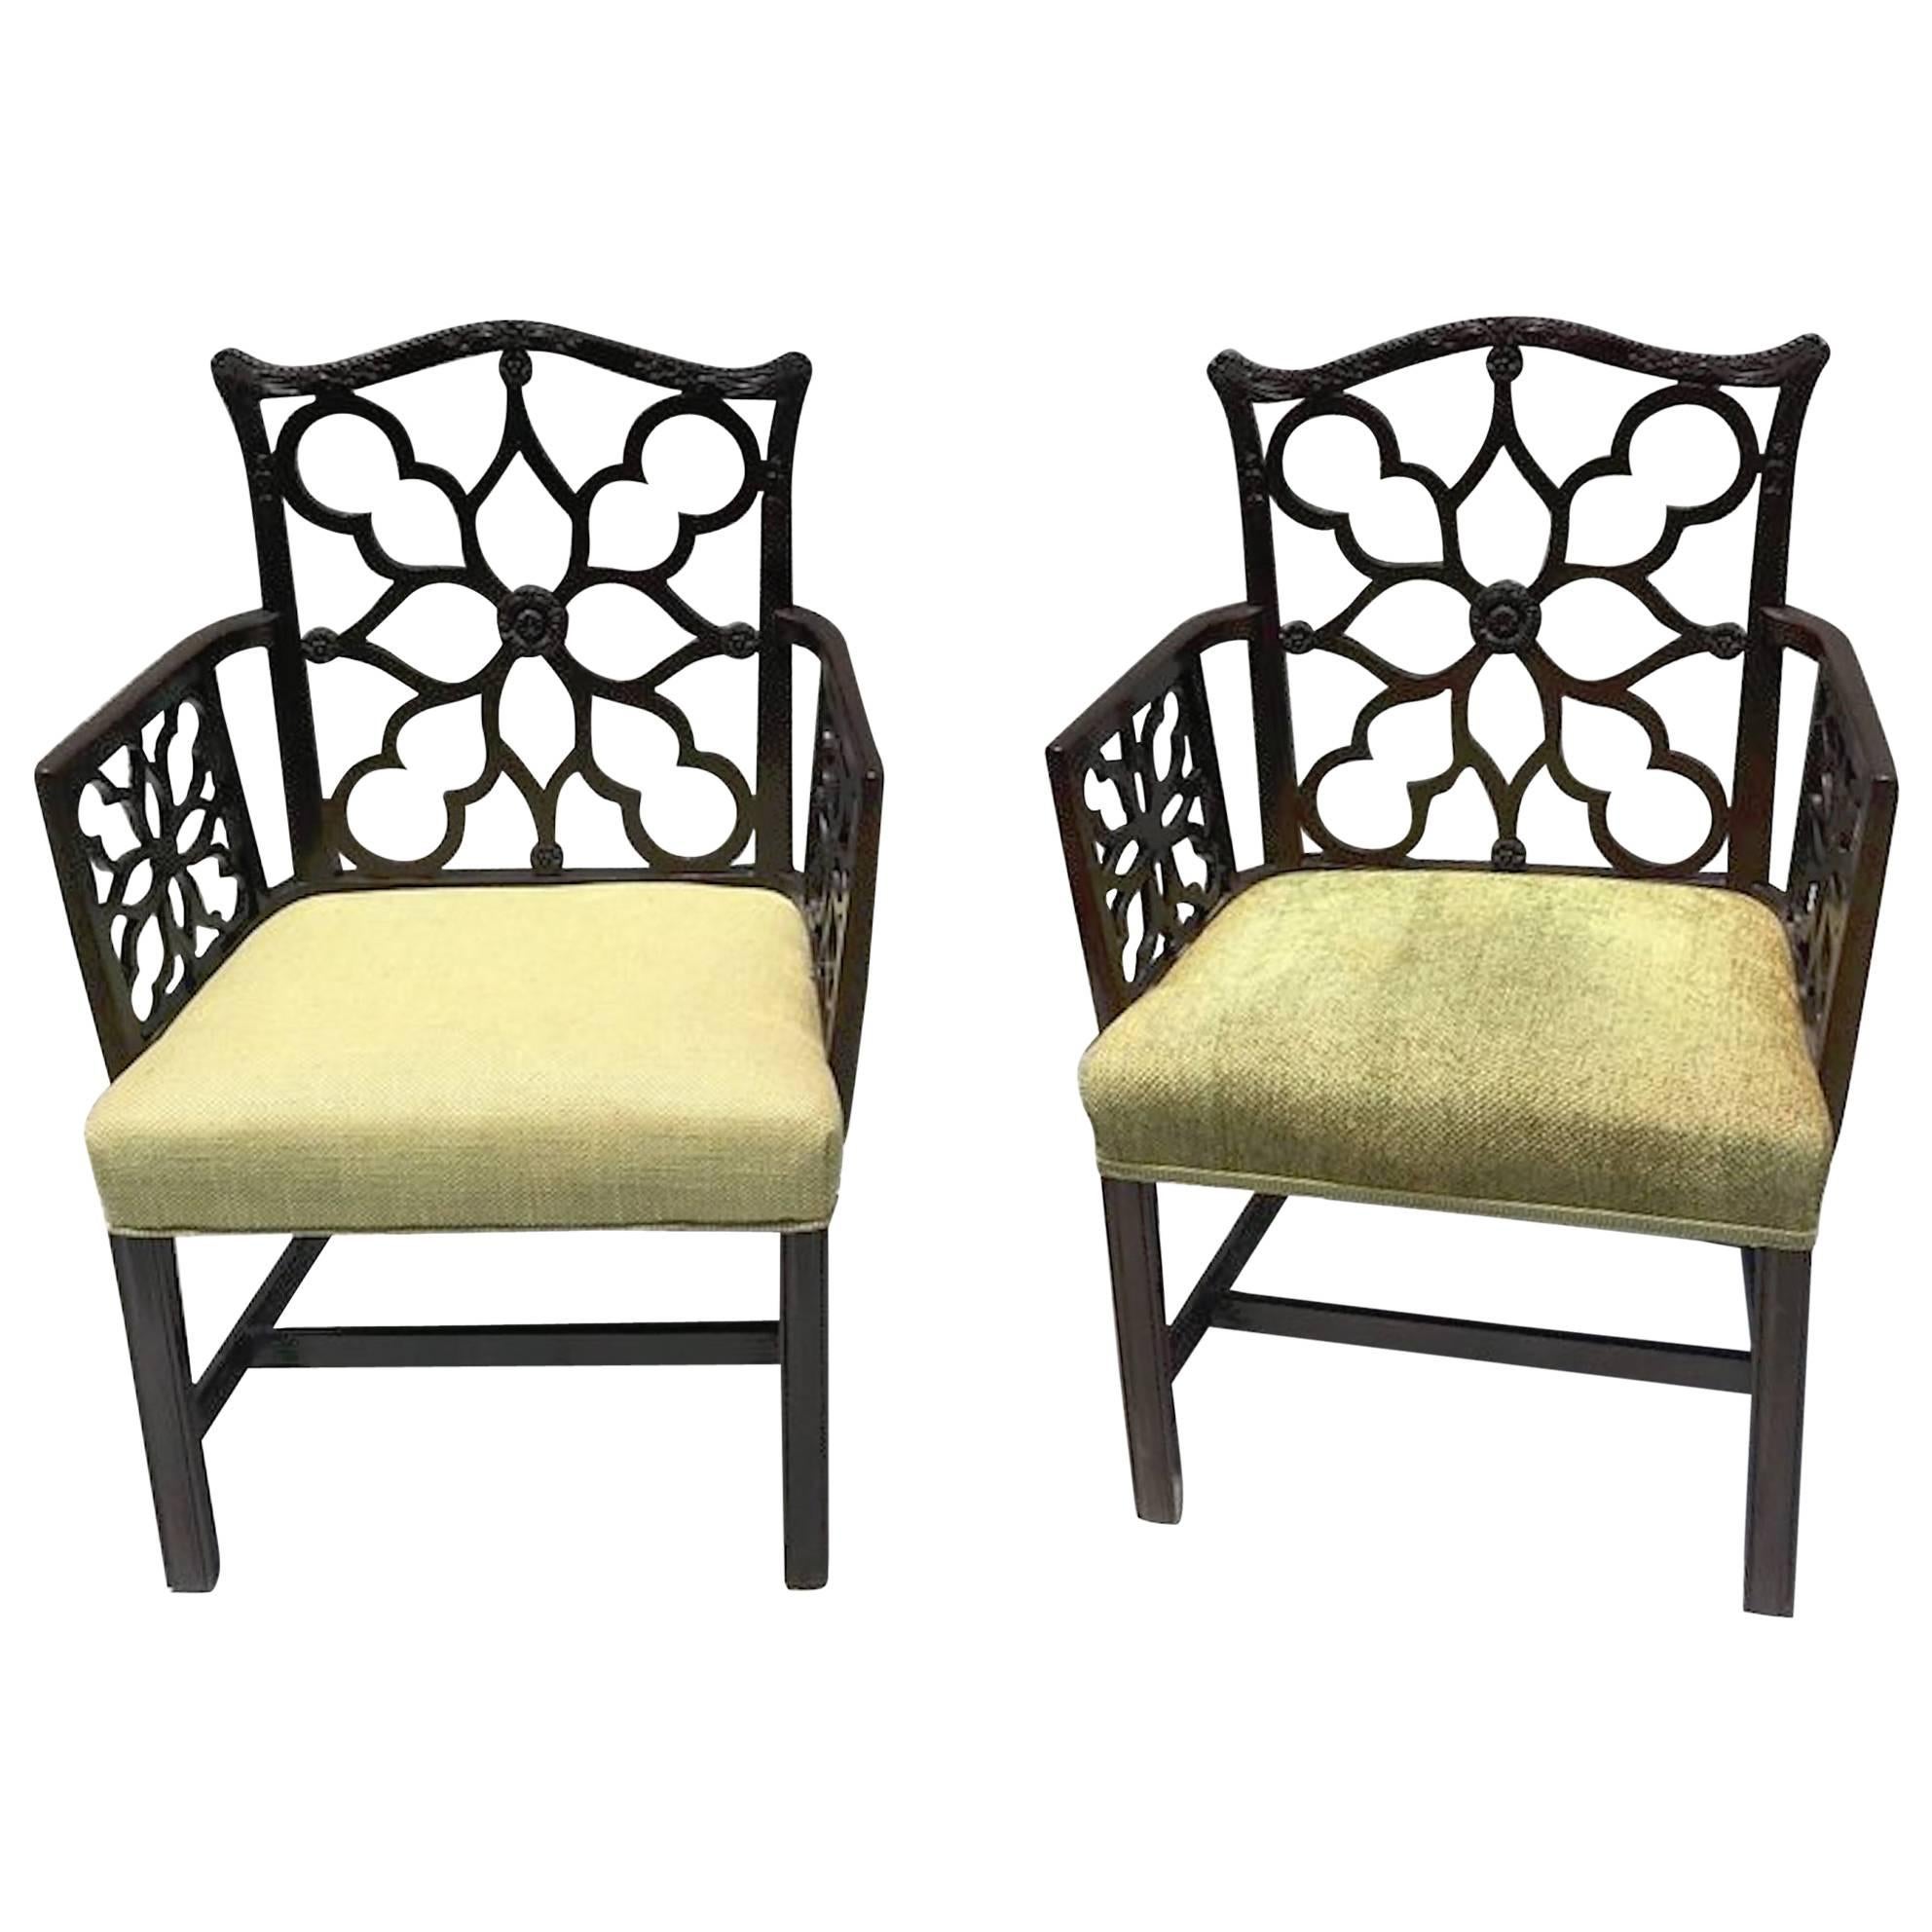 Pair of Georgian Style Lattice Armchairs